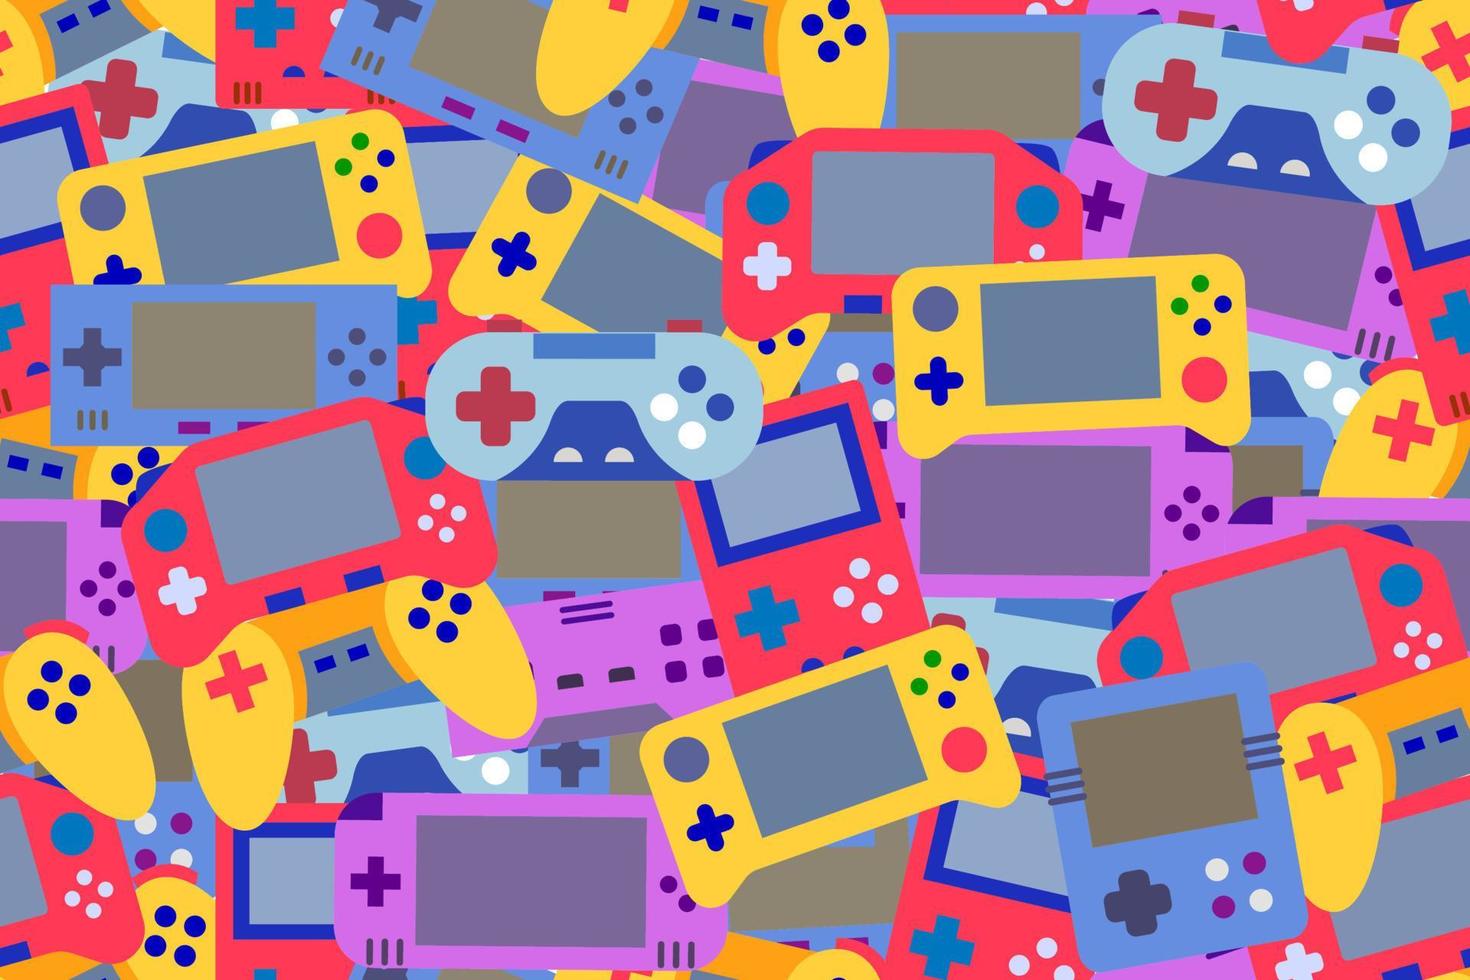 sömlöst, upprepande mönster med spelenheter. gula, röda, blå, lila handhållna konsoler och fjärrkontroller, trådlösa videospelskontroller, färgglada sömlösa mönster. vektor